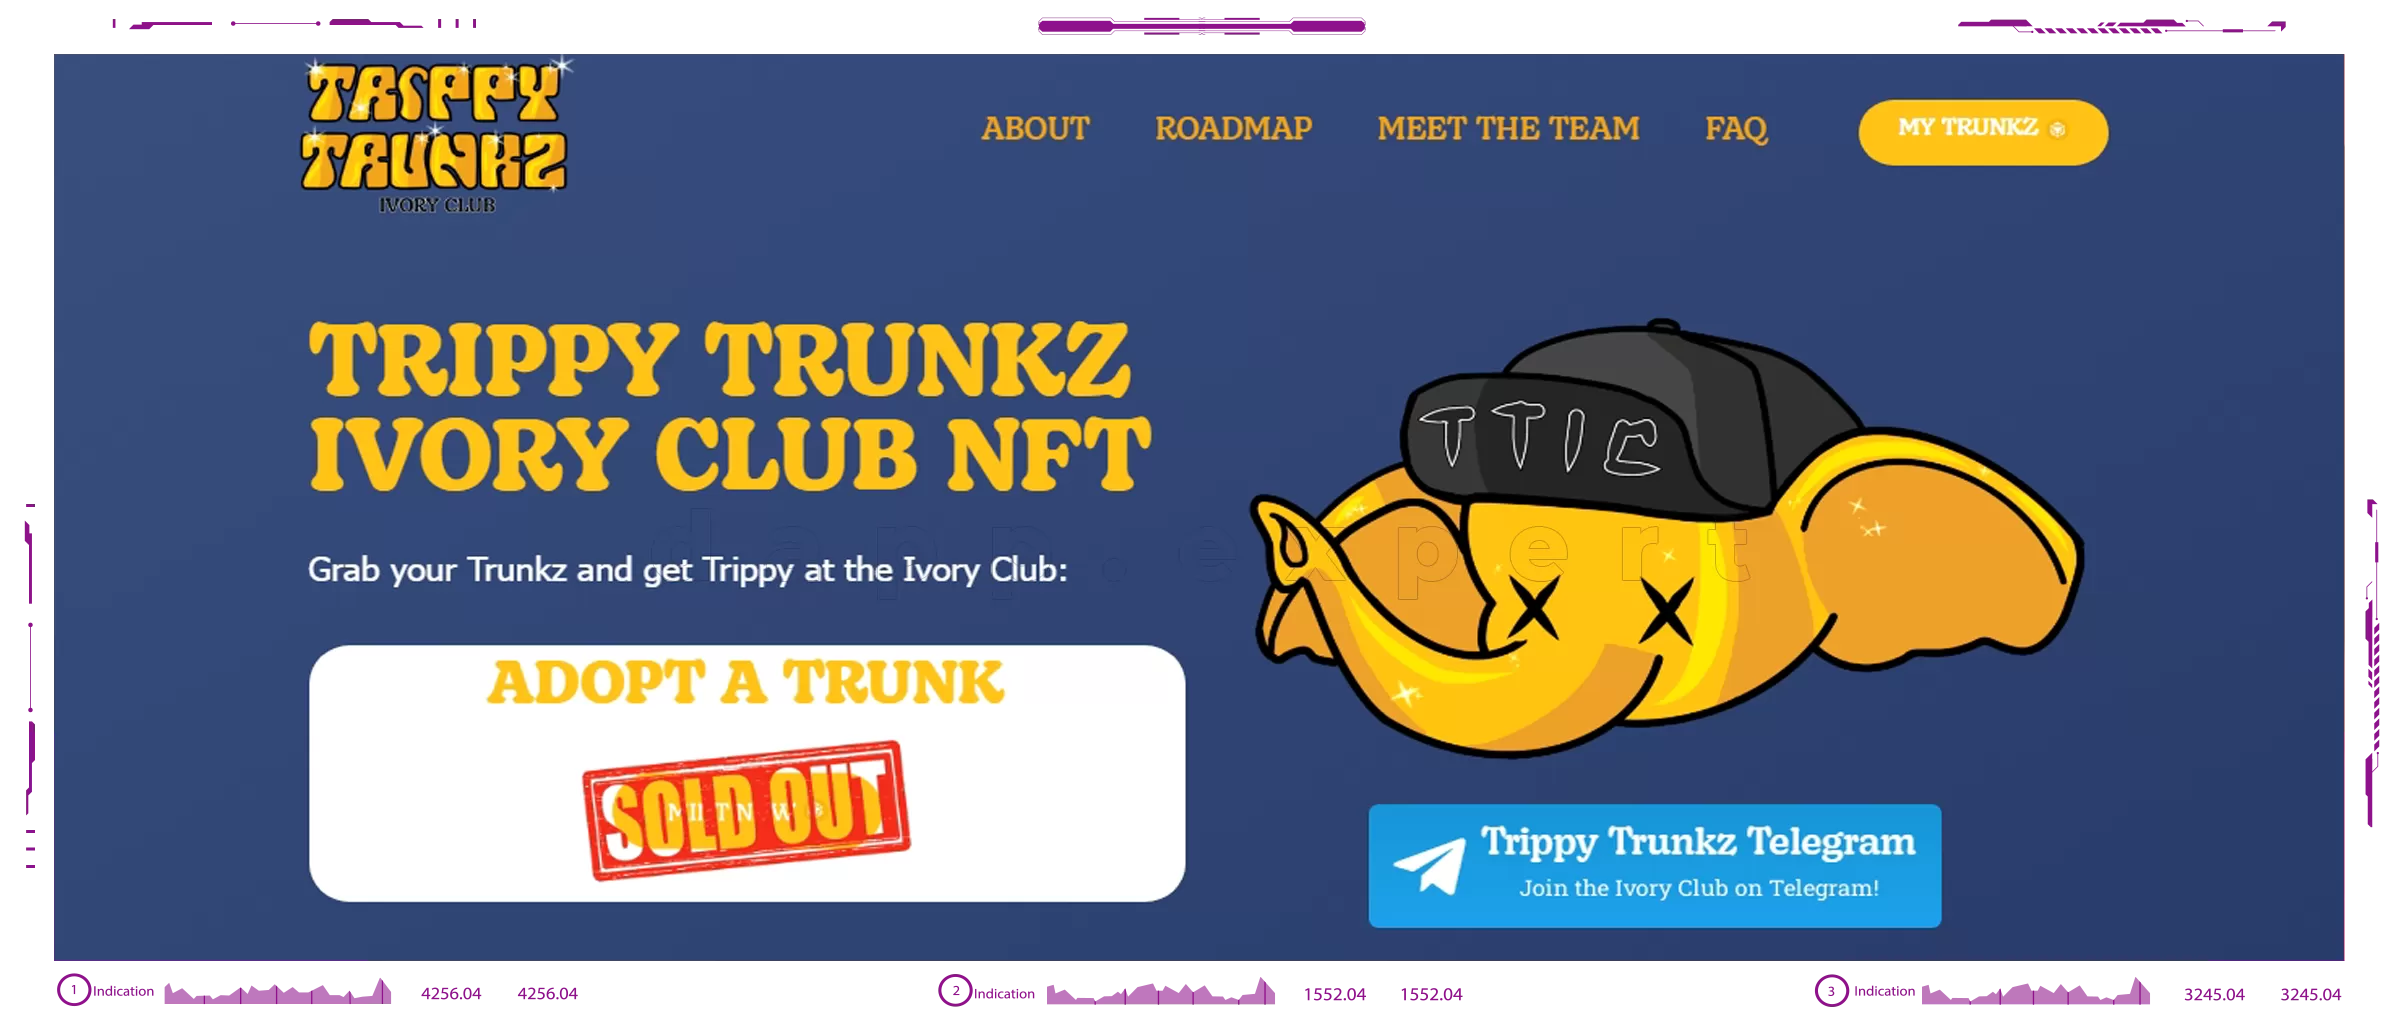 Trippy Trunkz Ivory Club dapps